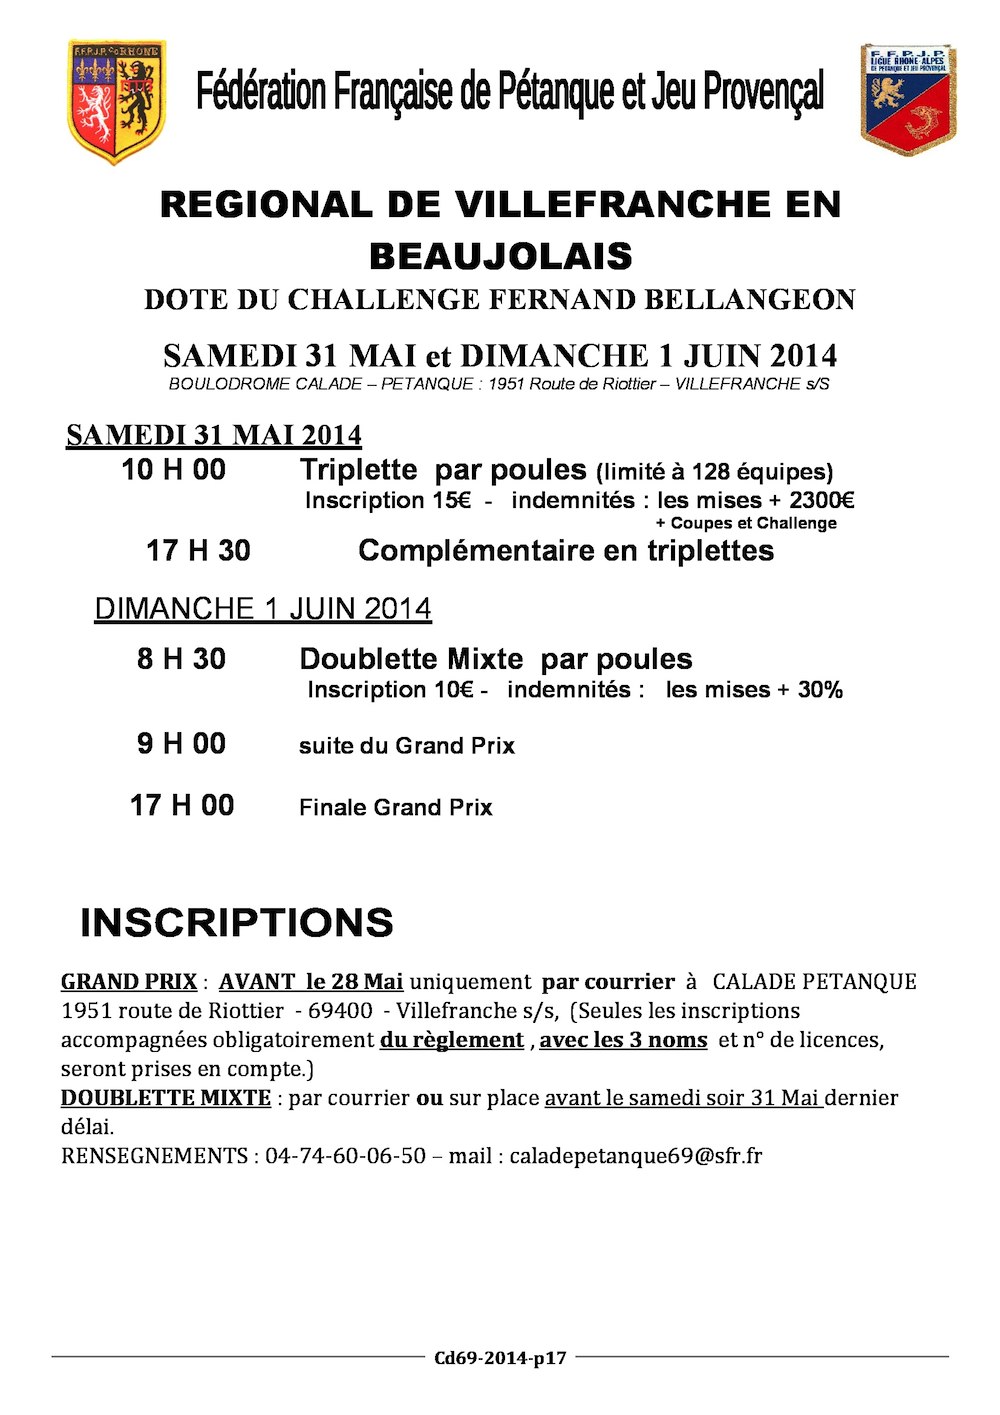 Régional de Villefranche samedi 31 mai et dimanche 01 juin 2014